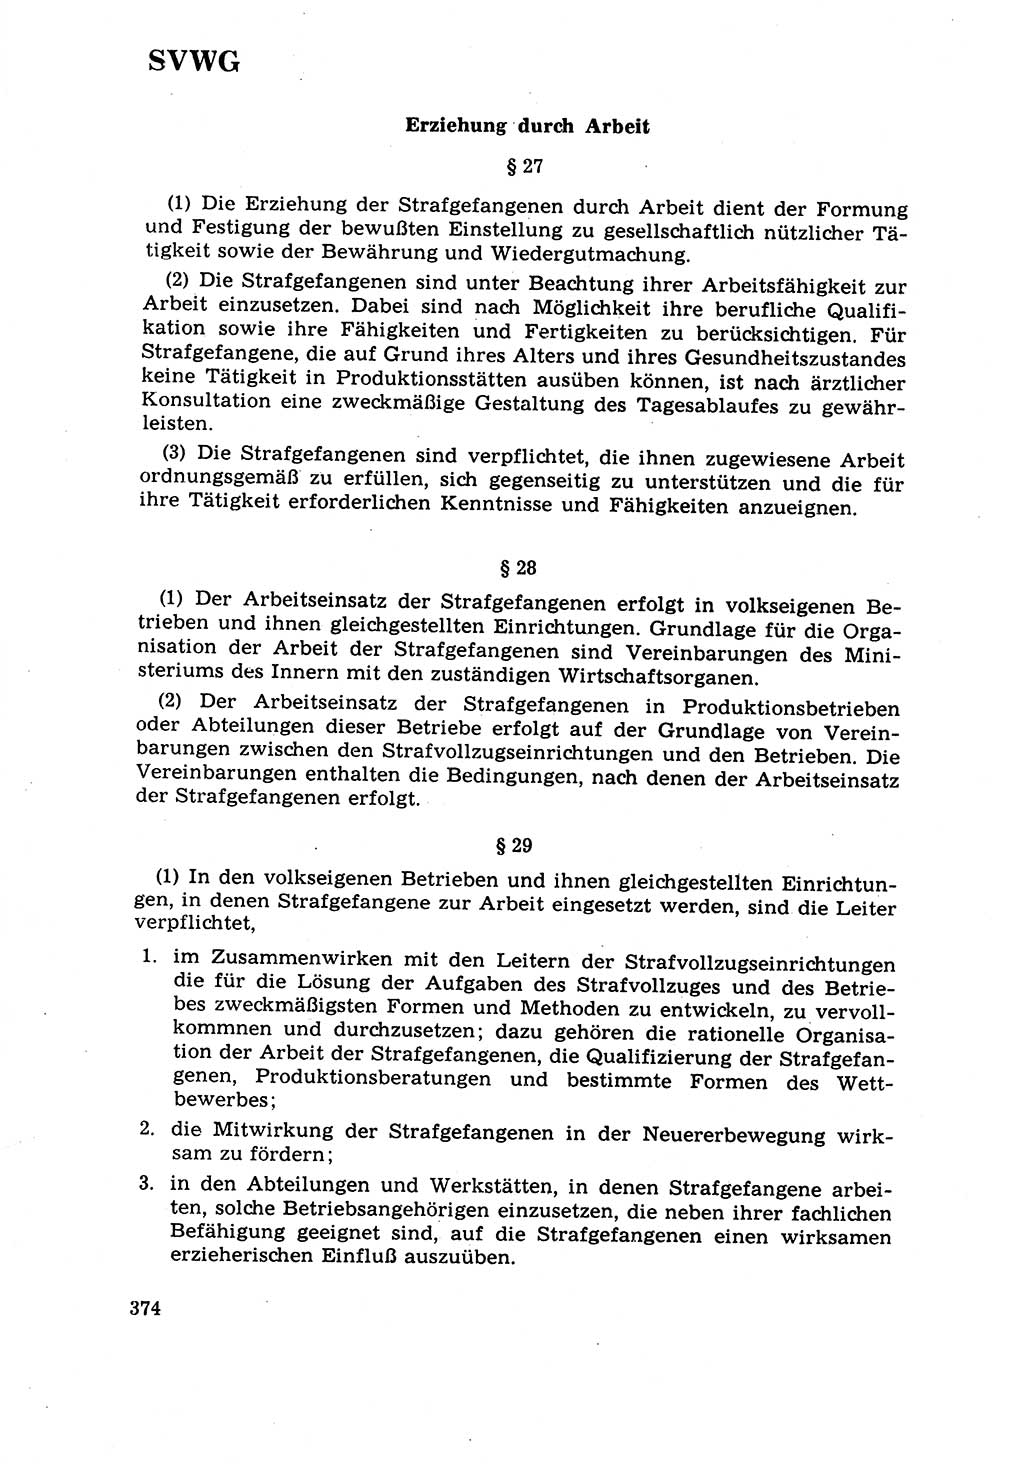 Strafrecht [Deutsche Demokratische Republik (DDR)] 1968, Seite 374 (Strafr. DDR 1968, S. 374)